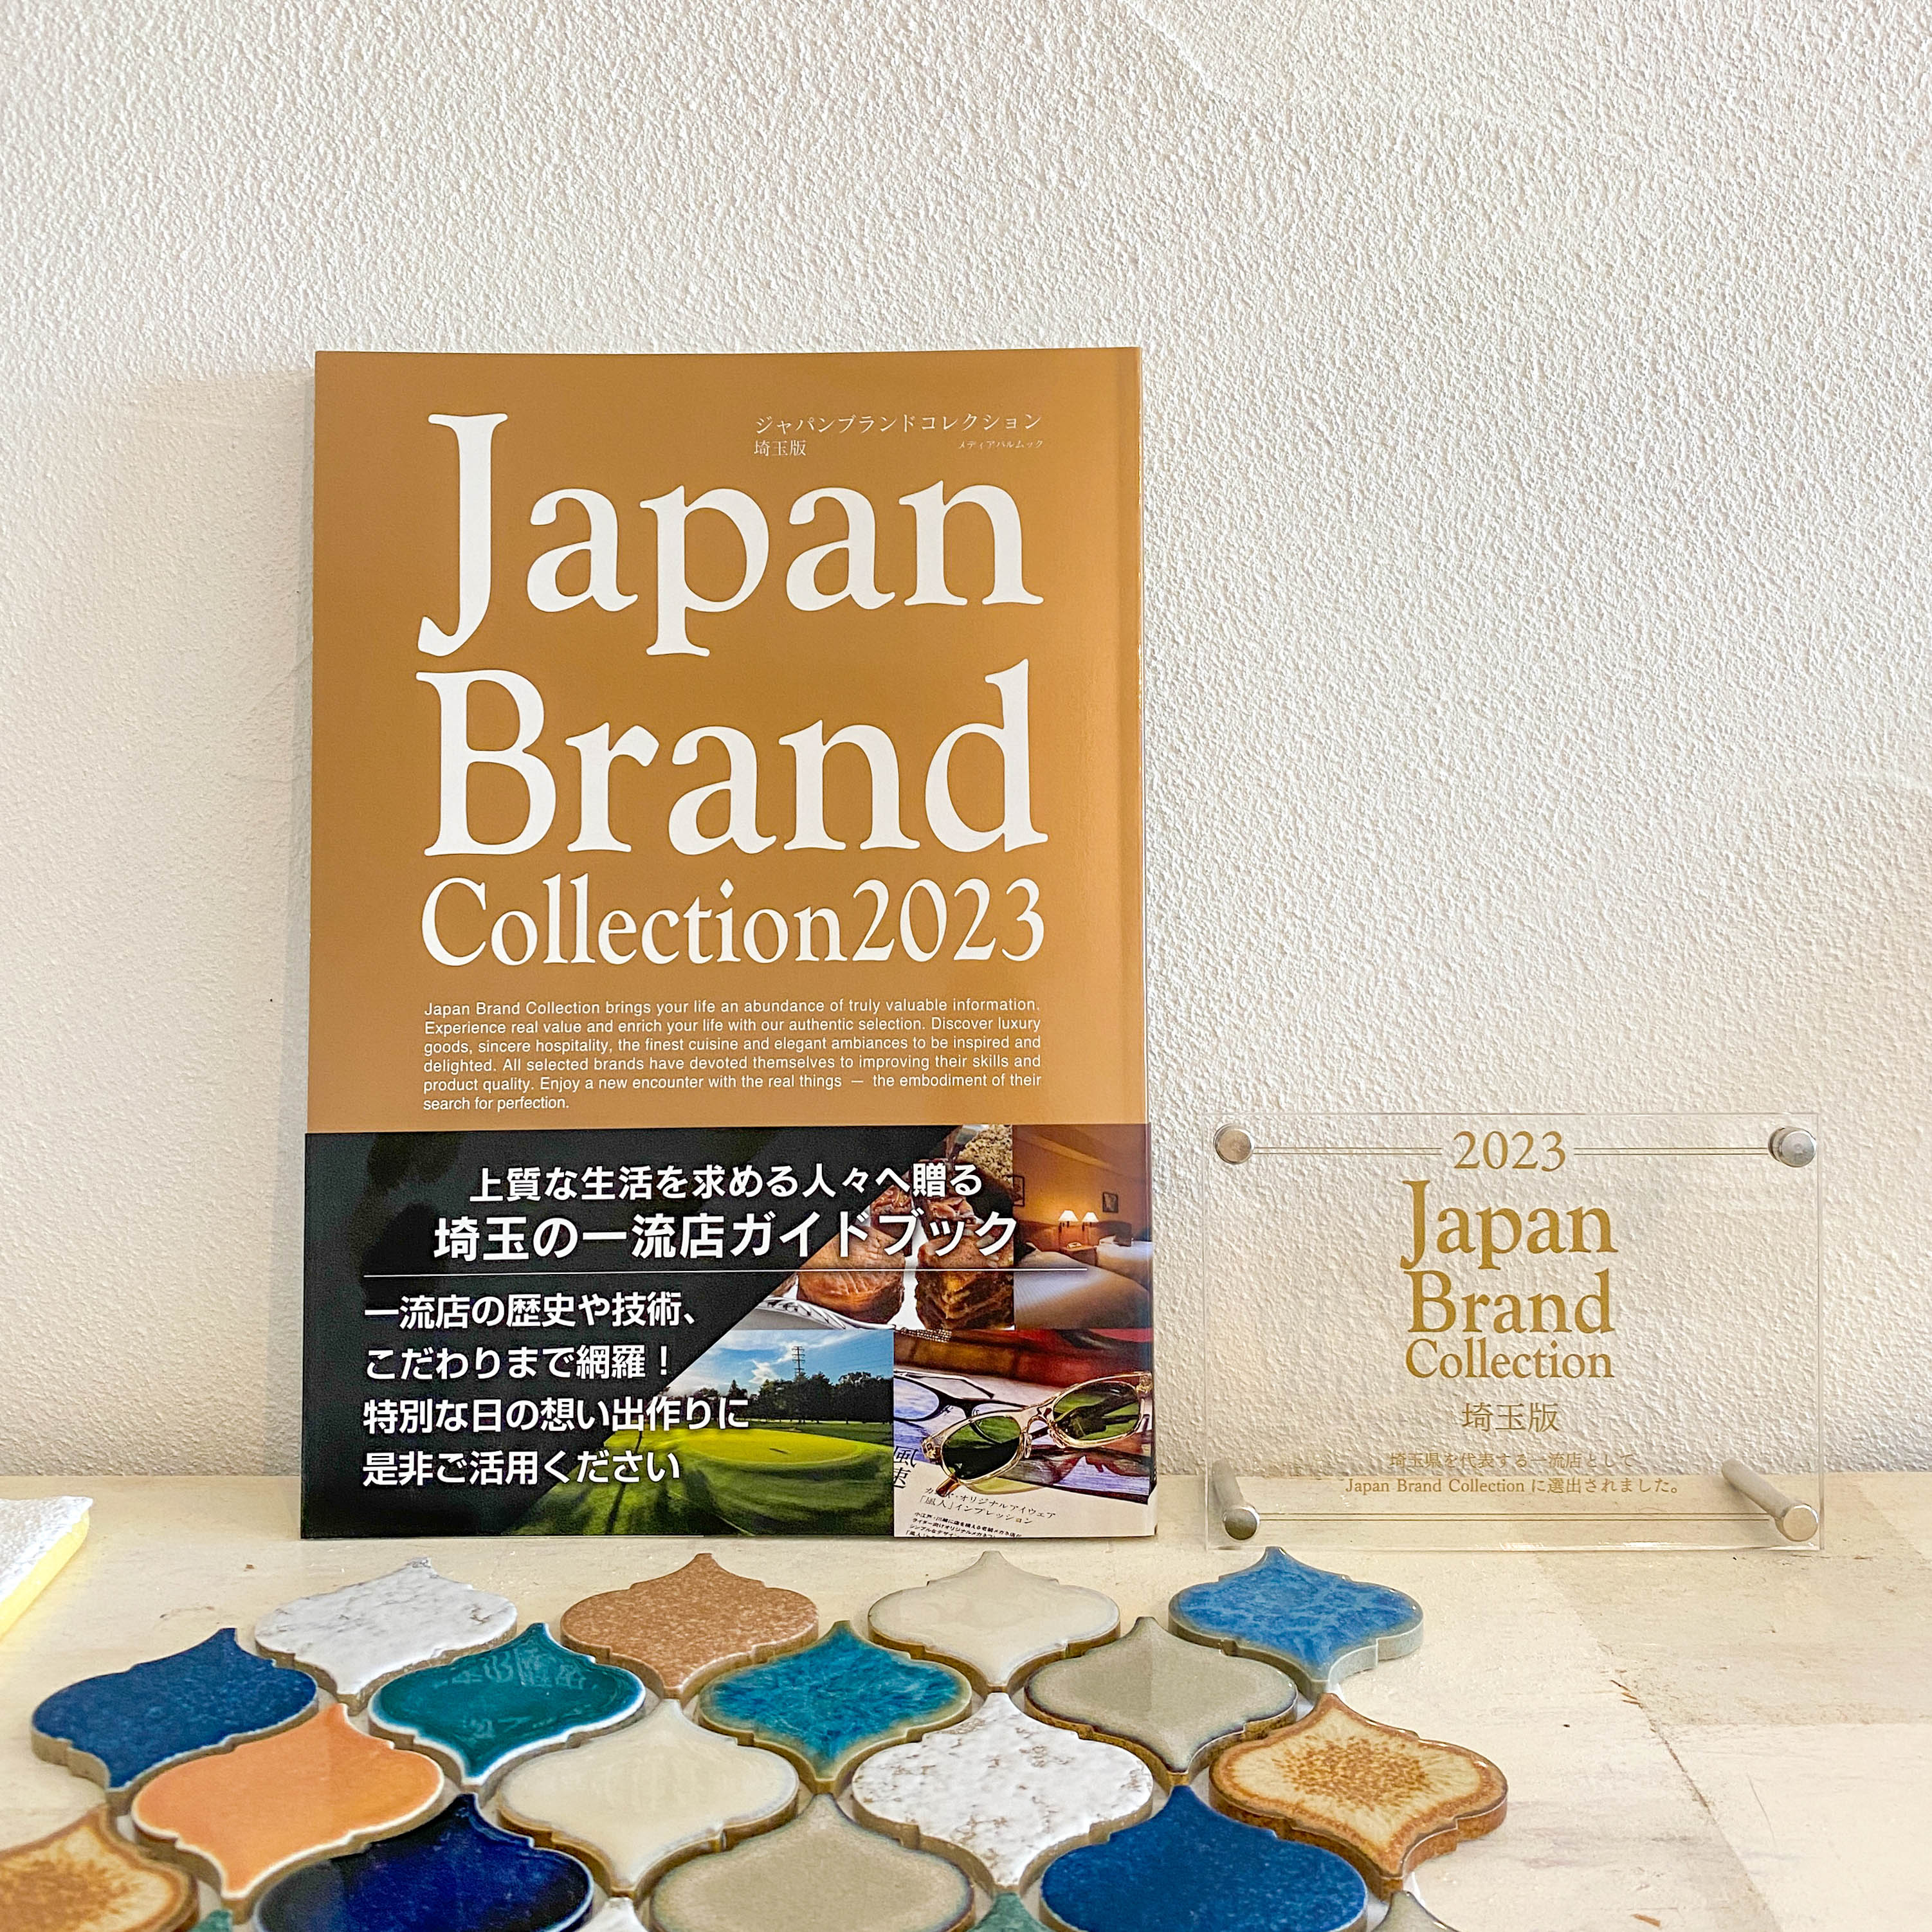 『Japan Brand Collection 2023埼玉版』掲載